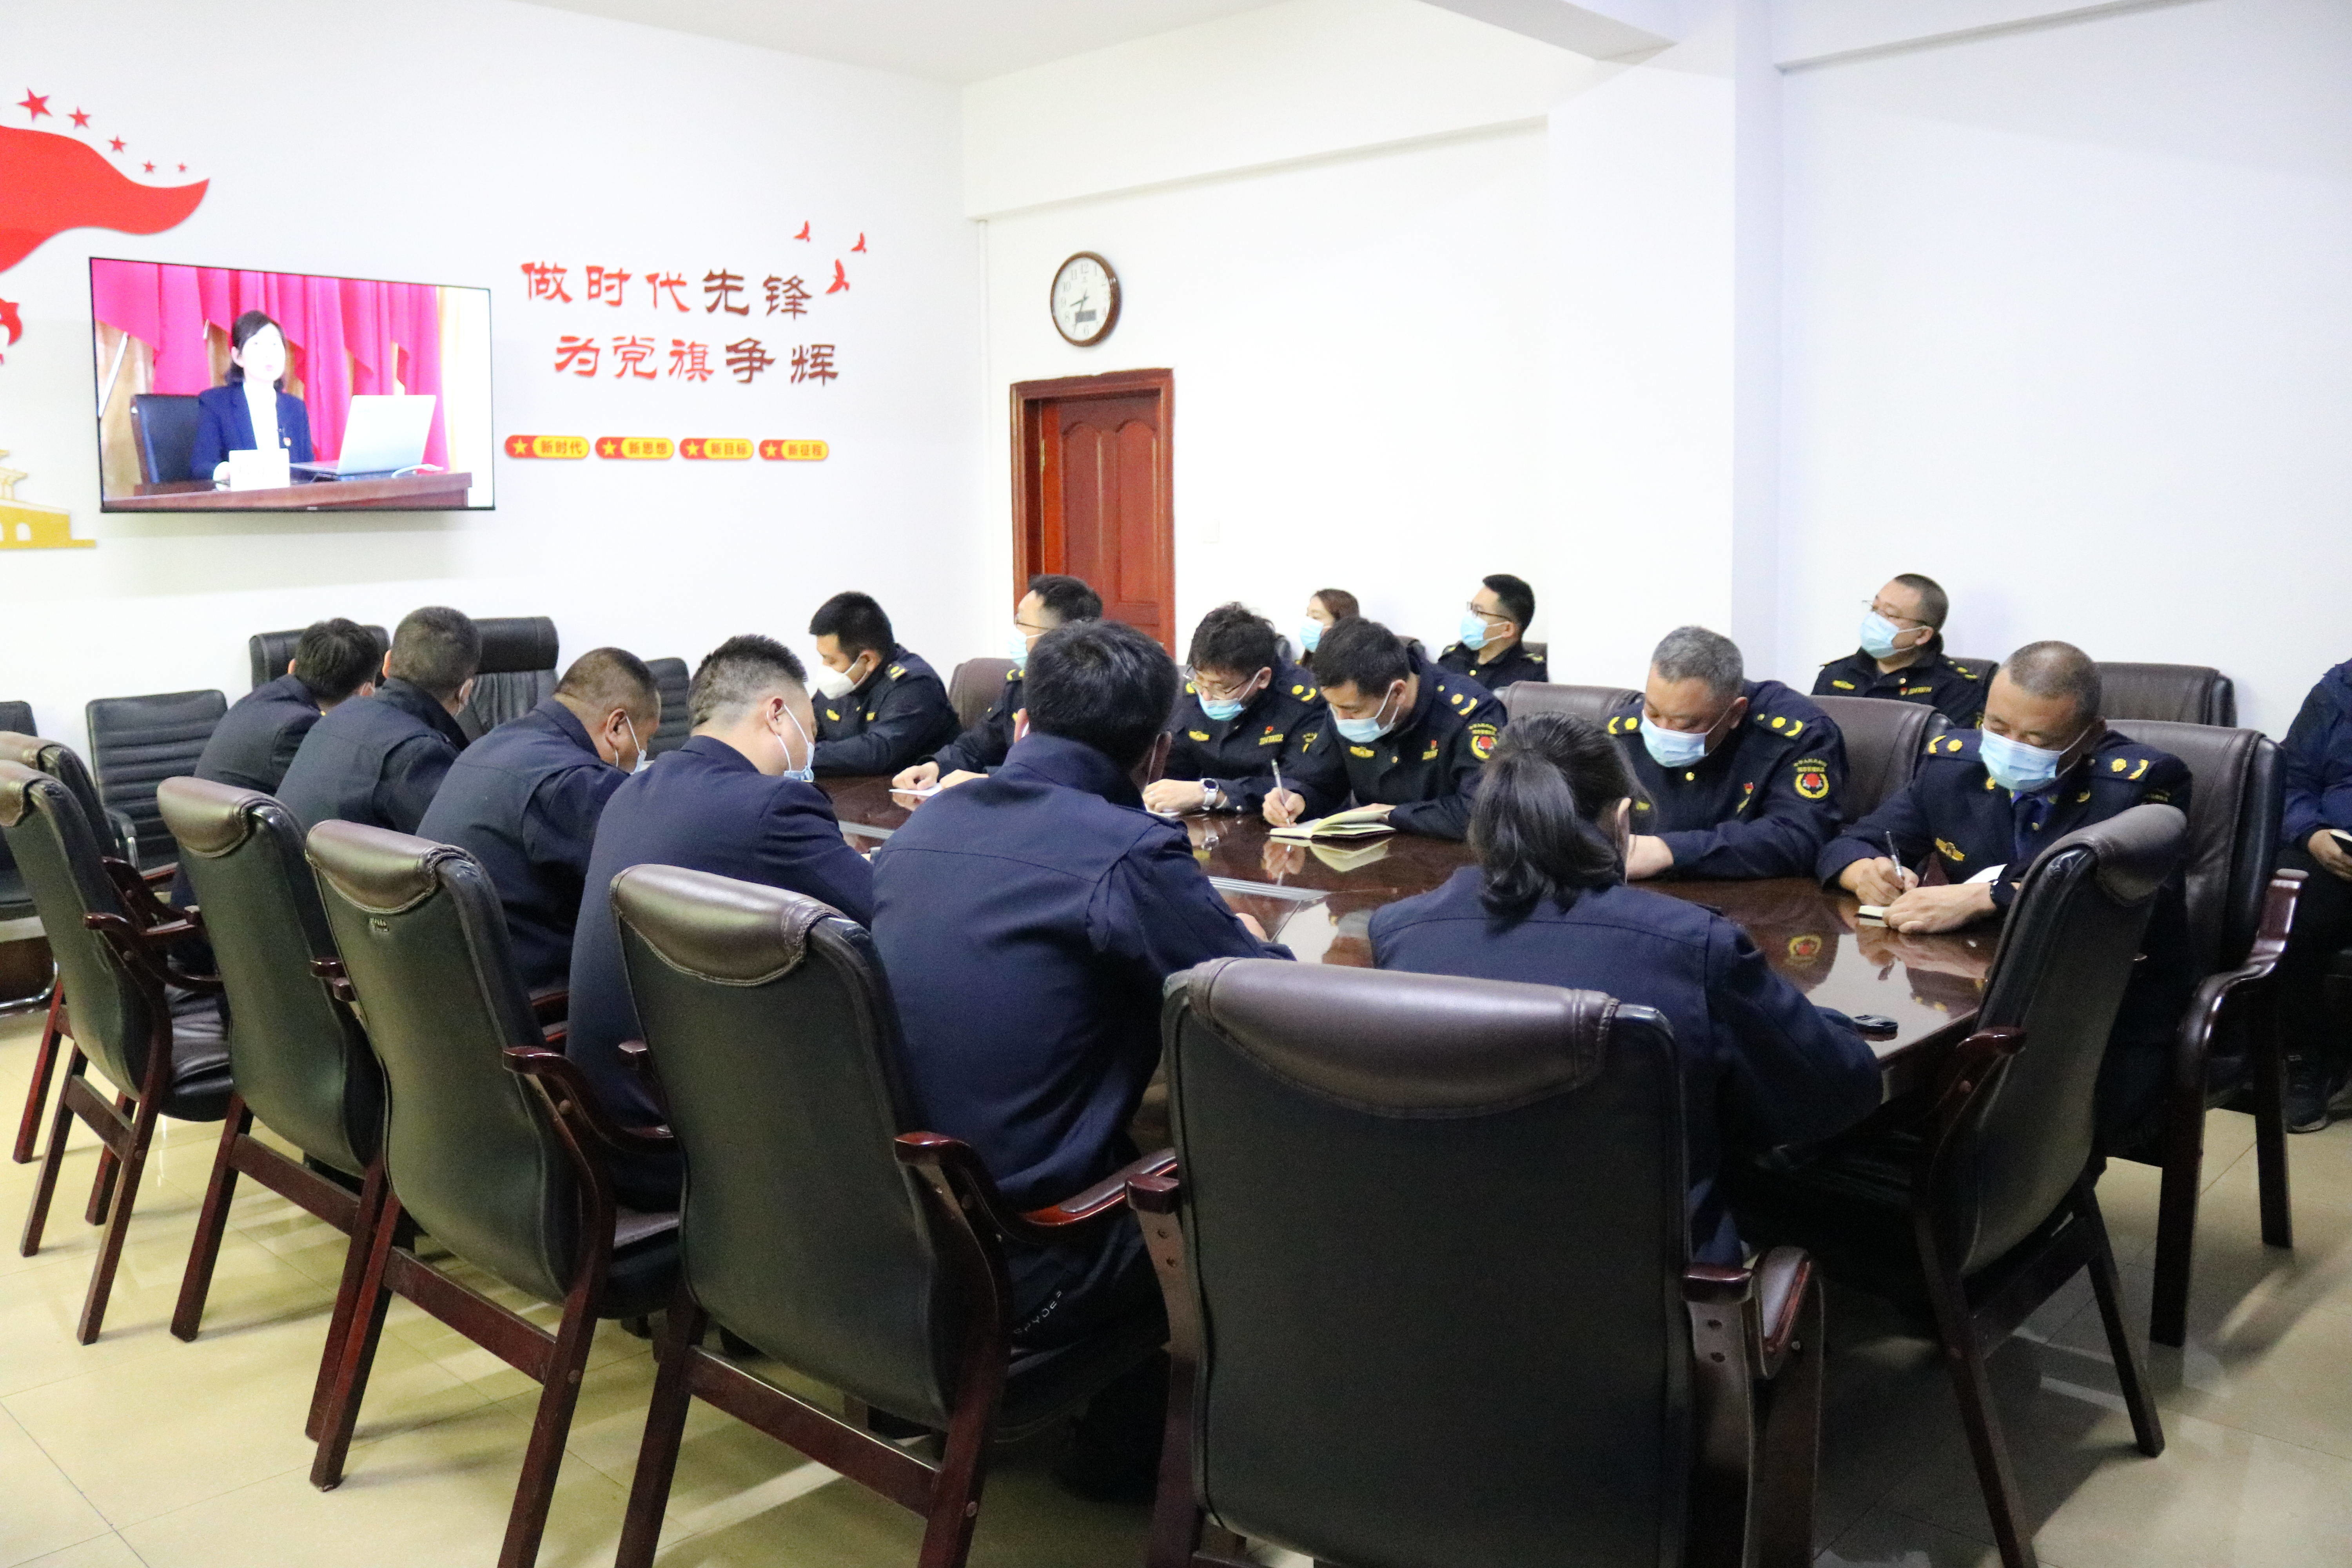 延吉市城管局召开学习《筑牢中华民族共同体意识凝聚团结奋进强大力量》视频会议